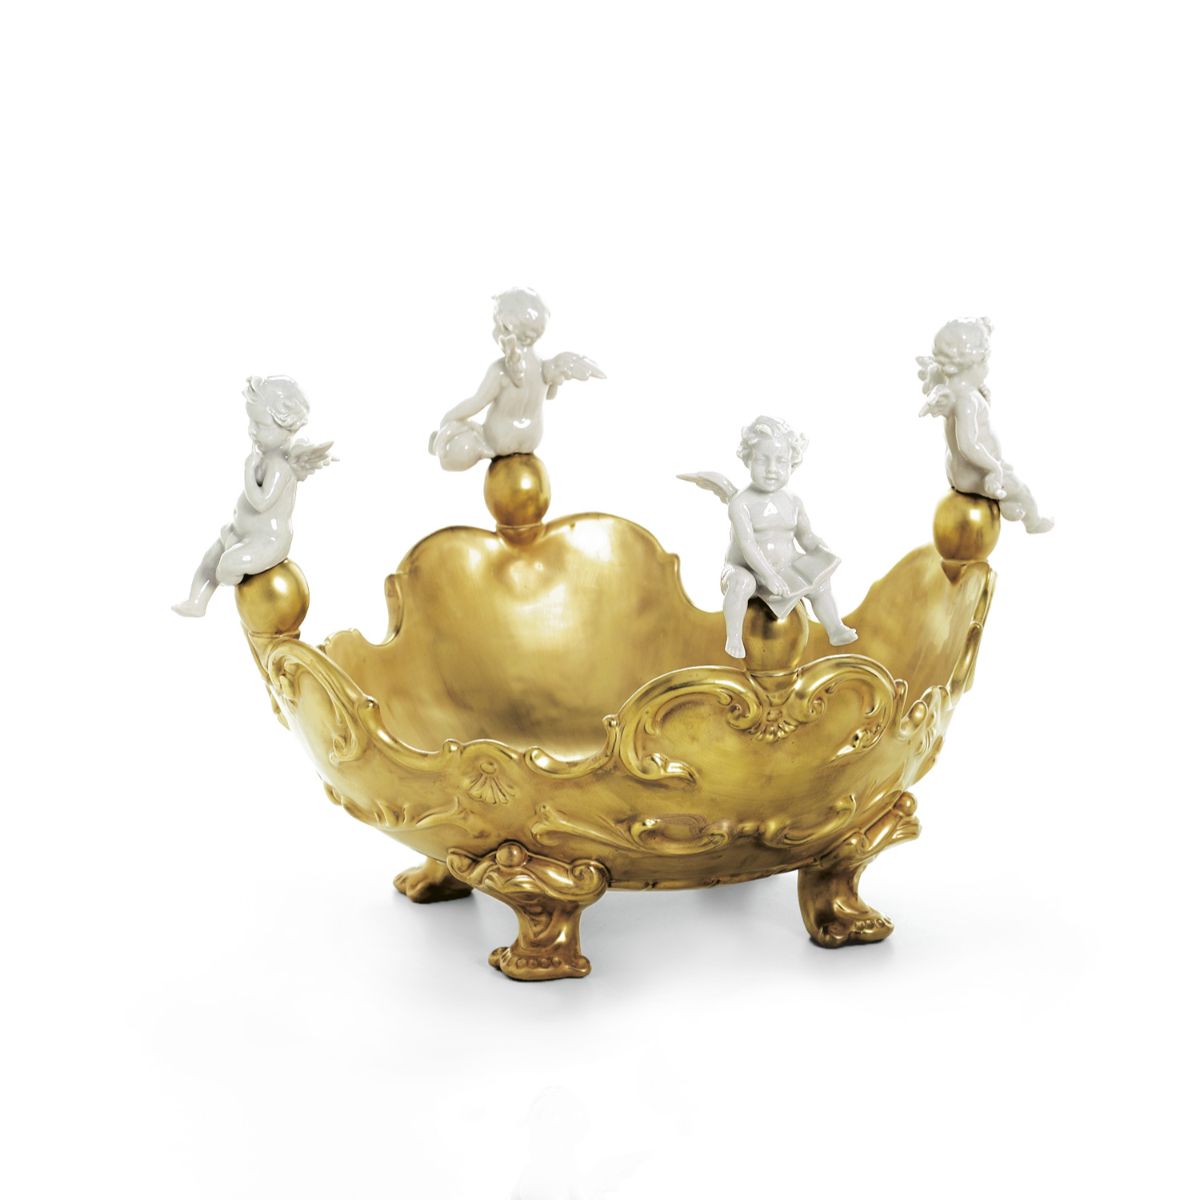 Baroque Centrepiece With 4 Cherubs - Gold